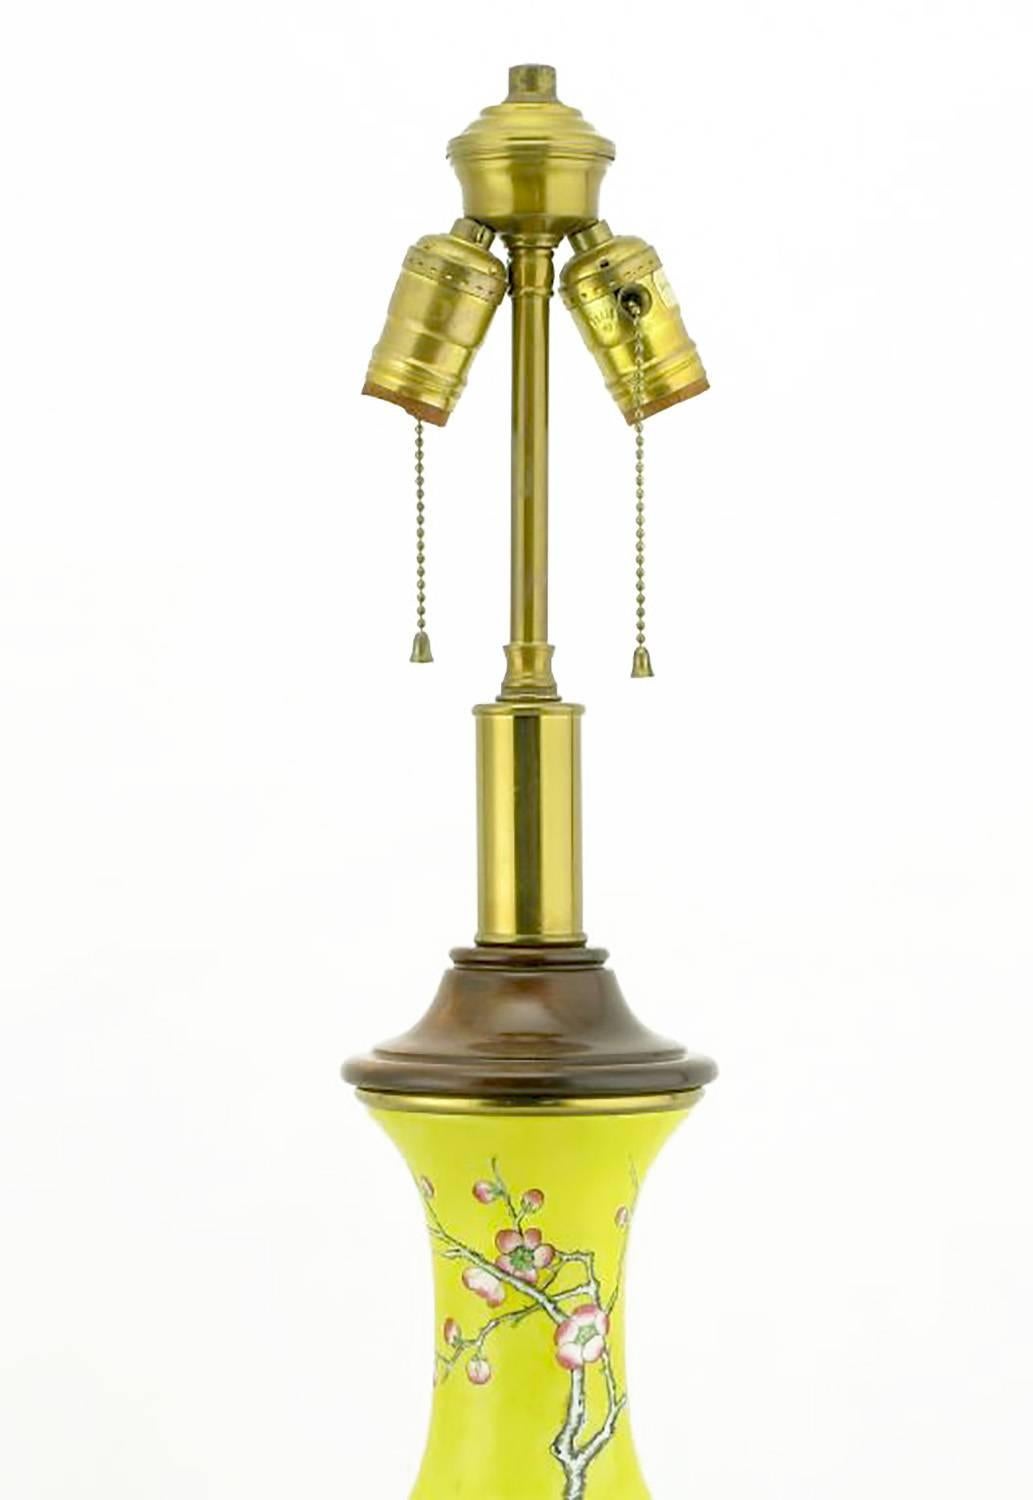 paul hanson lamps